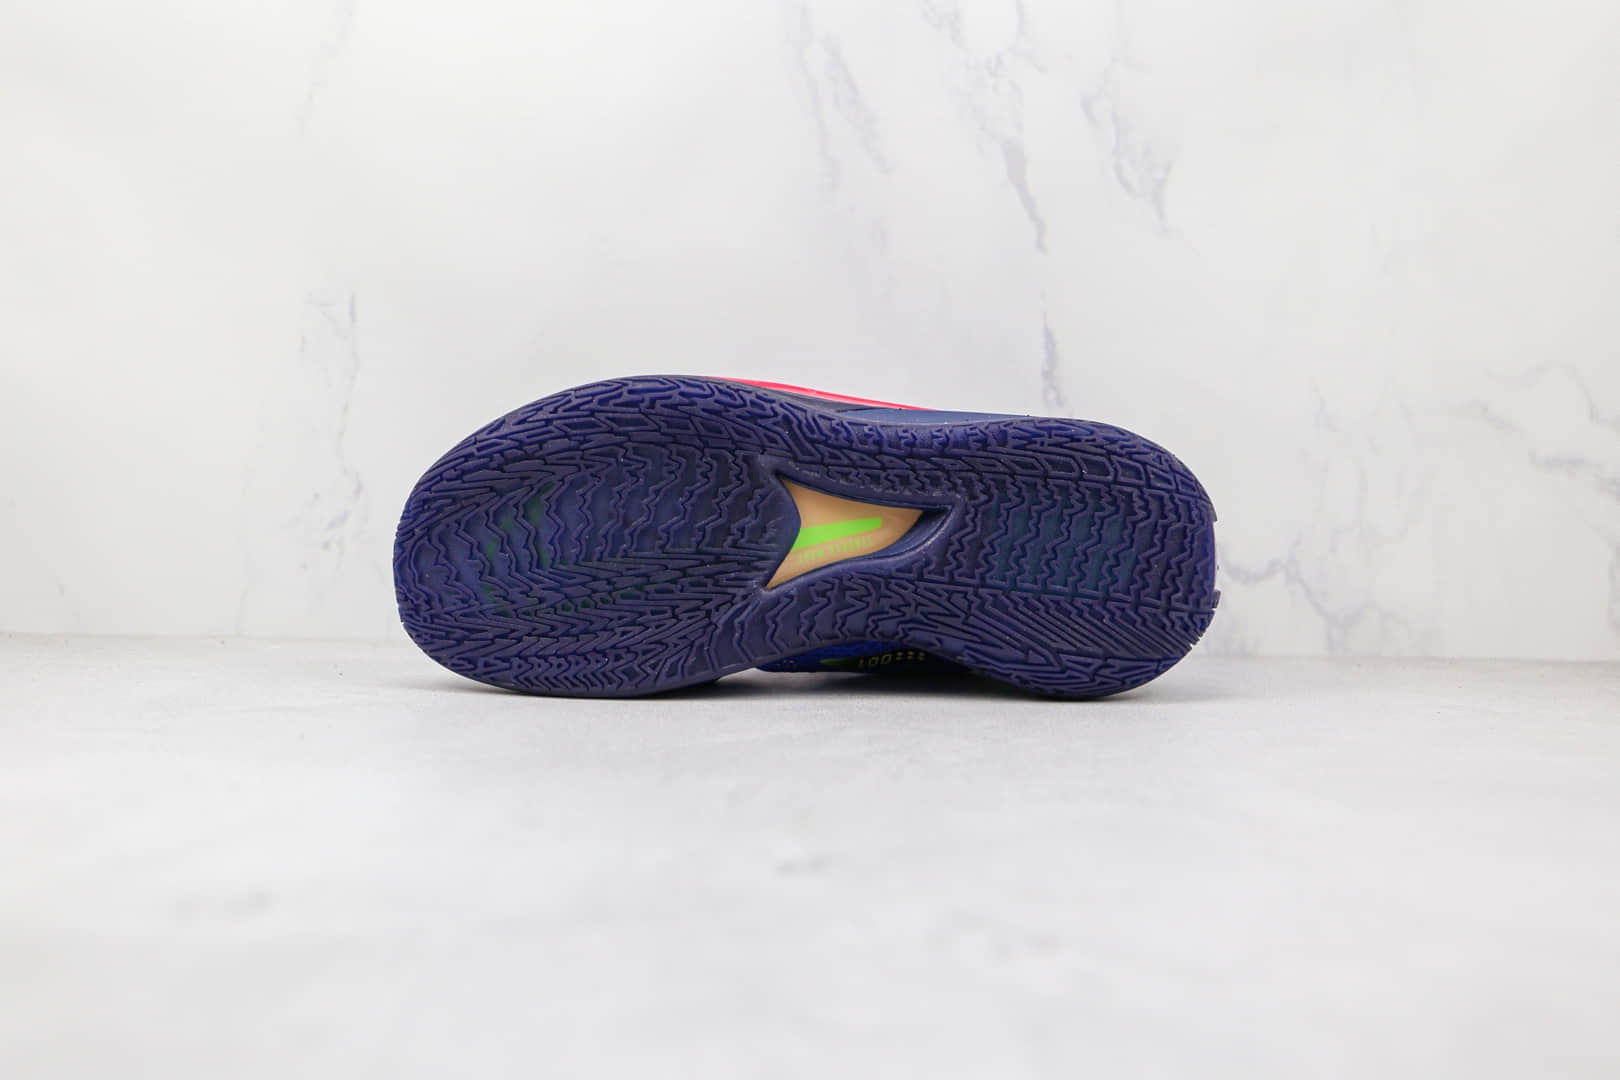 耐克Nike Zoom GT Cut纯原版本蓝红紫色GT篮球鞋内置气垫支持实战 货号：CZ0175-400